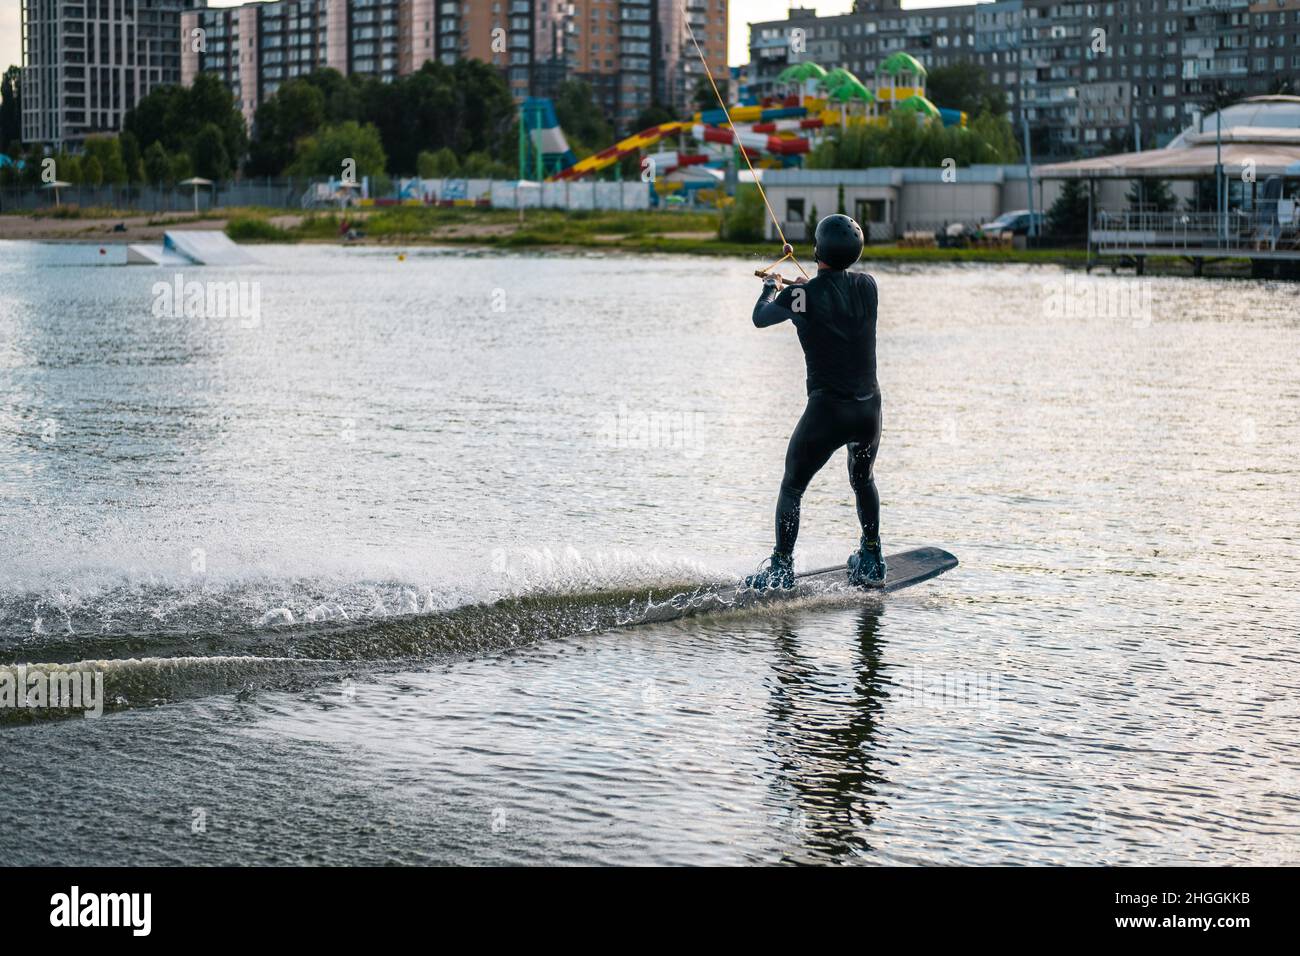 Sportlicher Mann, der am Wakeboard balanciert und am sonnigen Tag auf dem ruhigen Flusswasser reitet Stockfoto